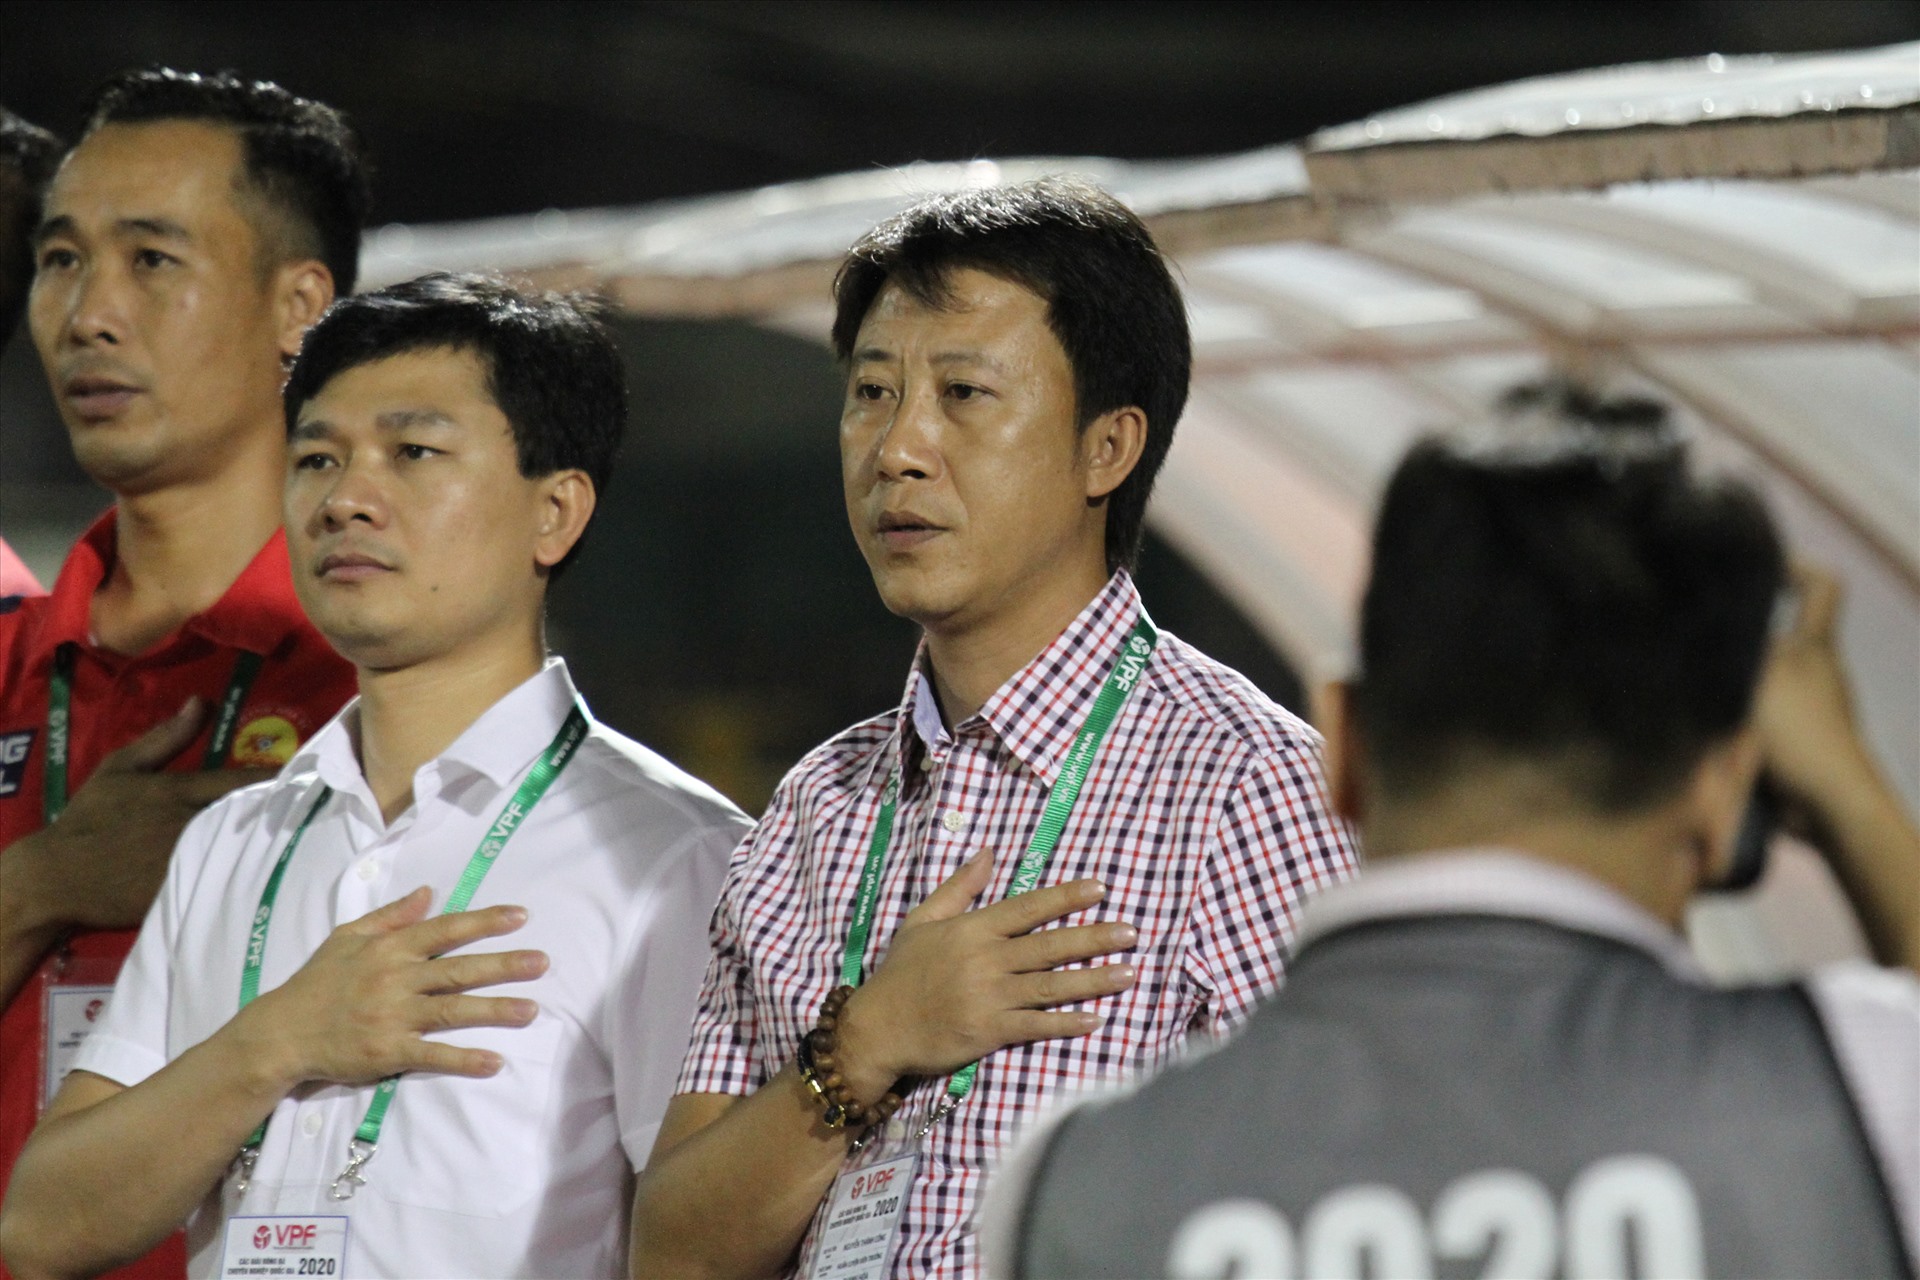 Huấn luyện viên trưởng của Thanh Hoá là ông Nguyễn Thành Công cũng có lần đầu tiên gặp lại đội bóng cũ trên cương vị mới. Trước đó, ông Công từng có 2 năm làm việc và đem về khá nhiều thành tích ấn tượng trên cương vị huấn luyện viên trưởng câu lạc bộ Sài Gòn.